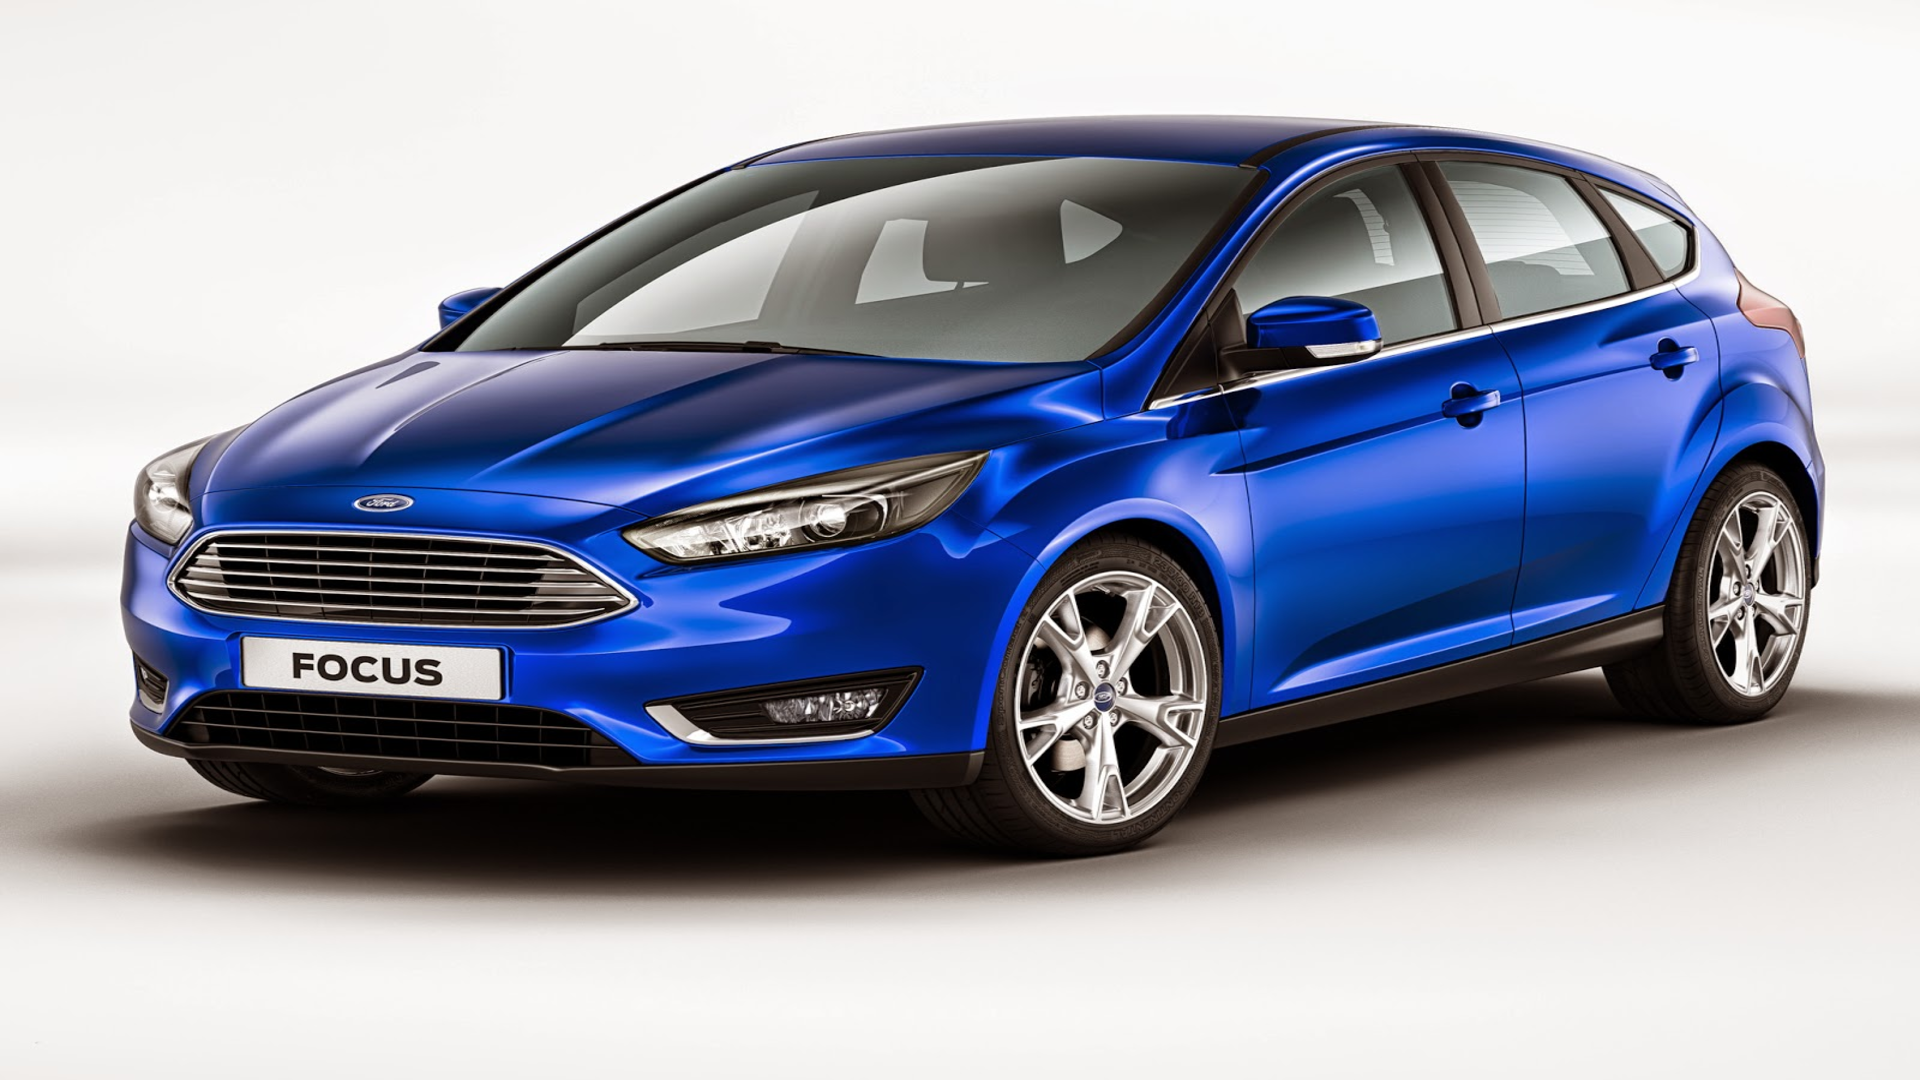  Xe Ford Focus 2015 được bán rộng rãi